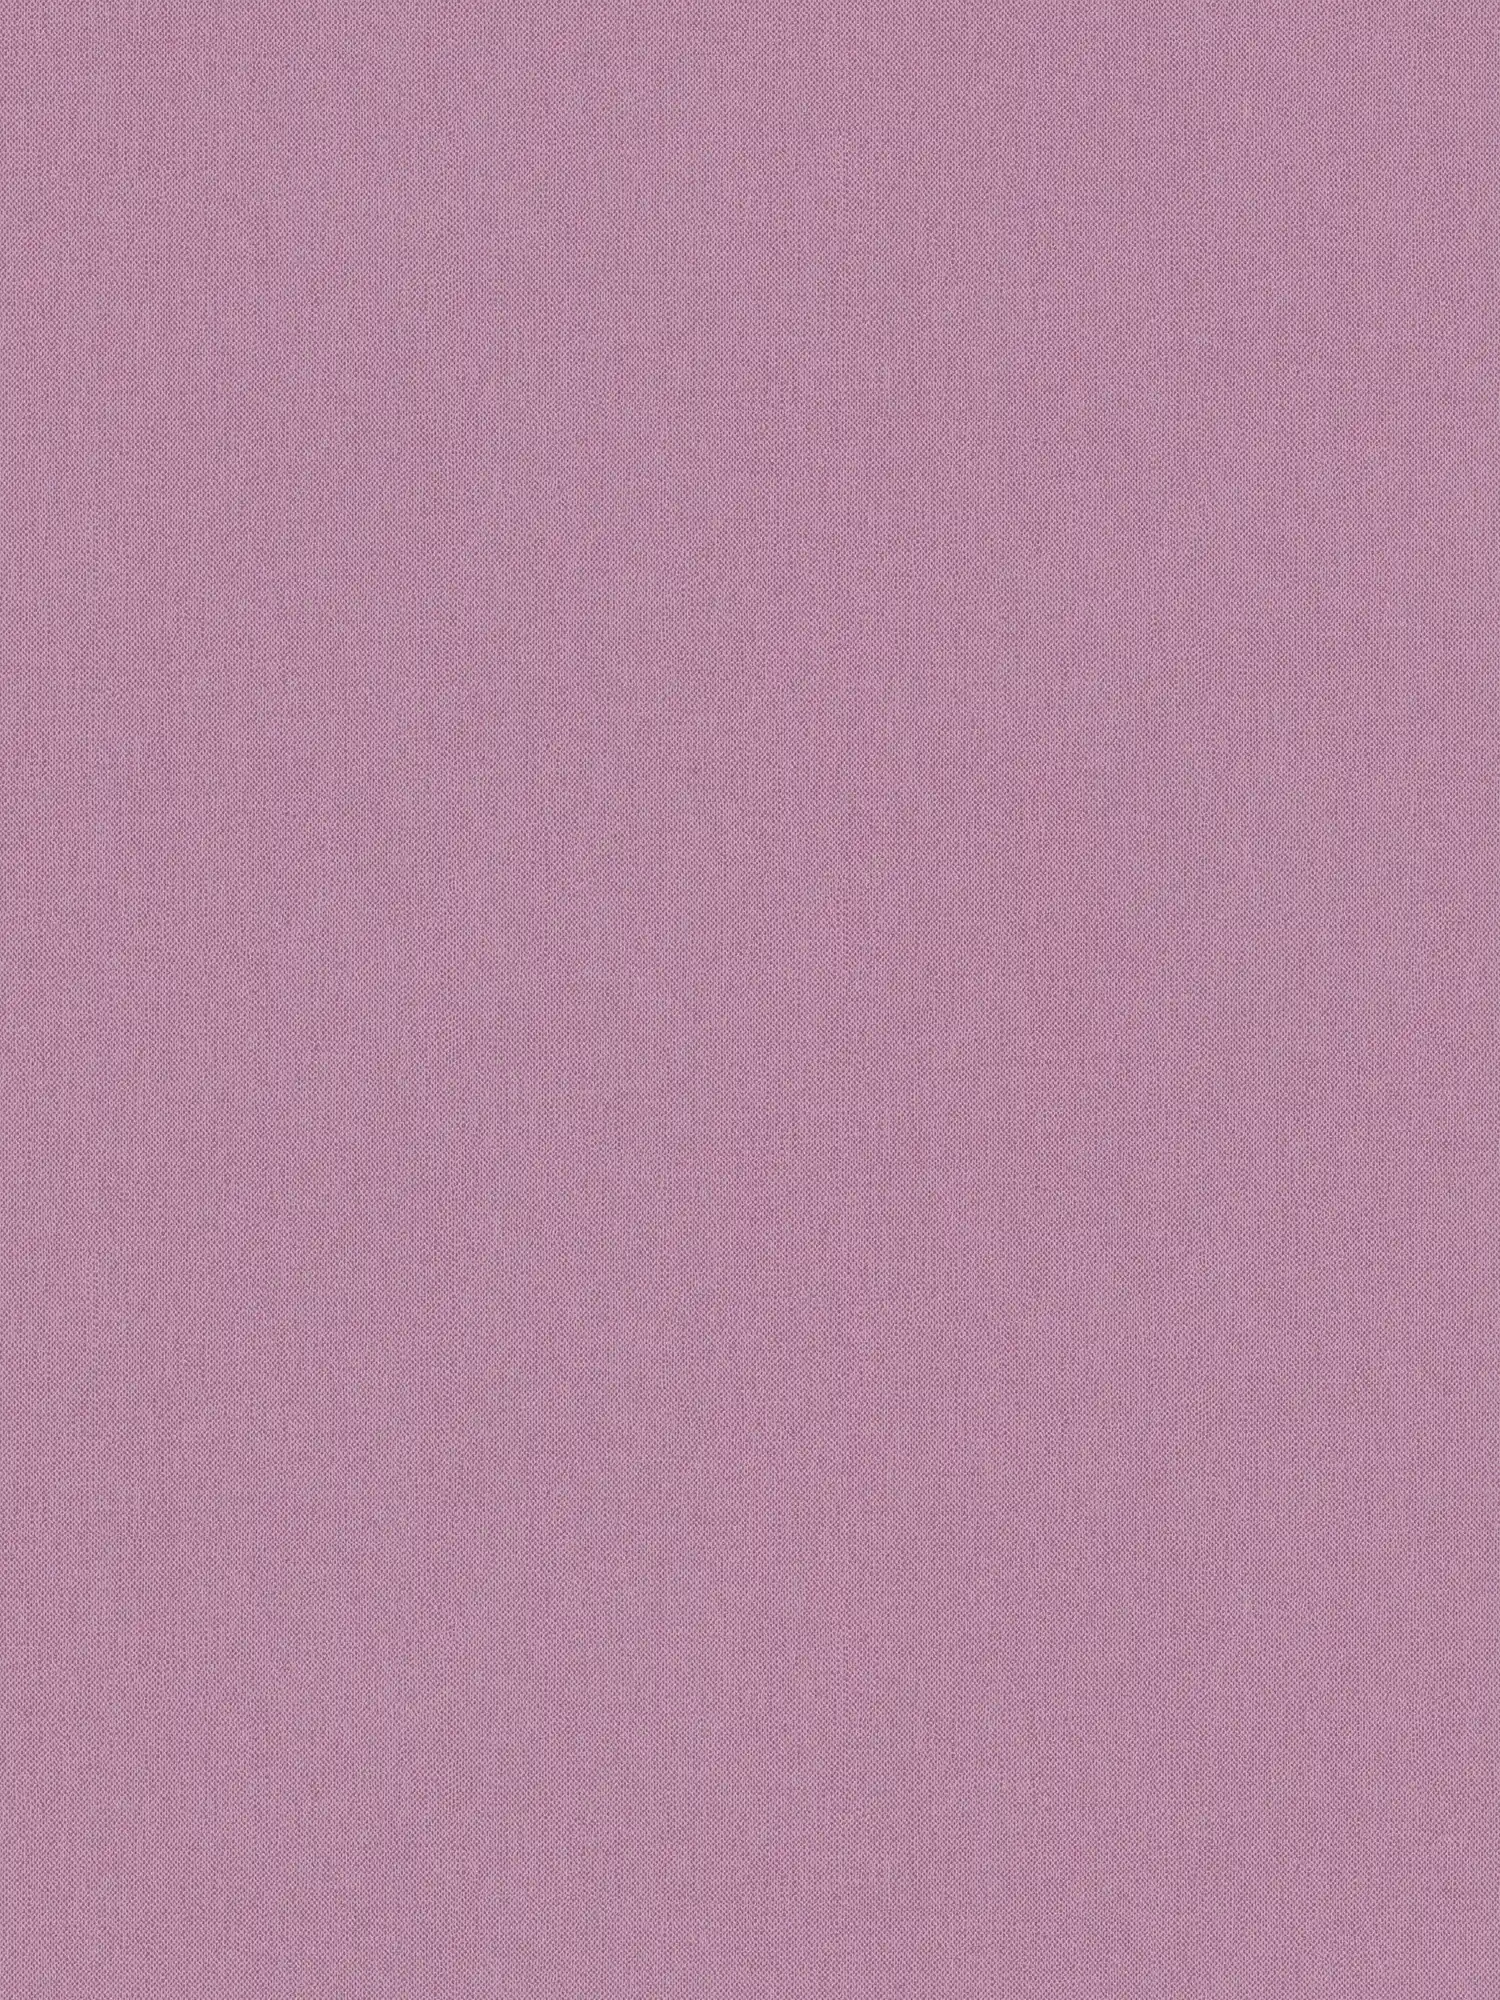 wallpaper lilac plain linen texture & textile look - purple
